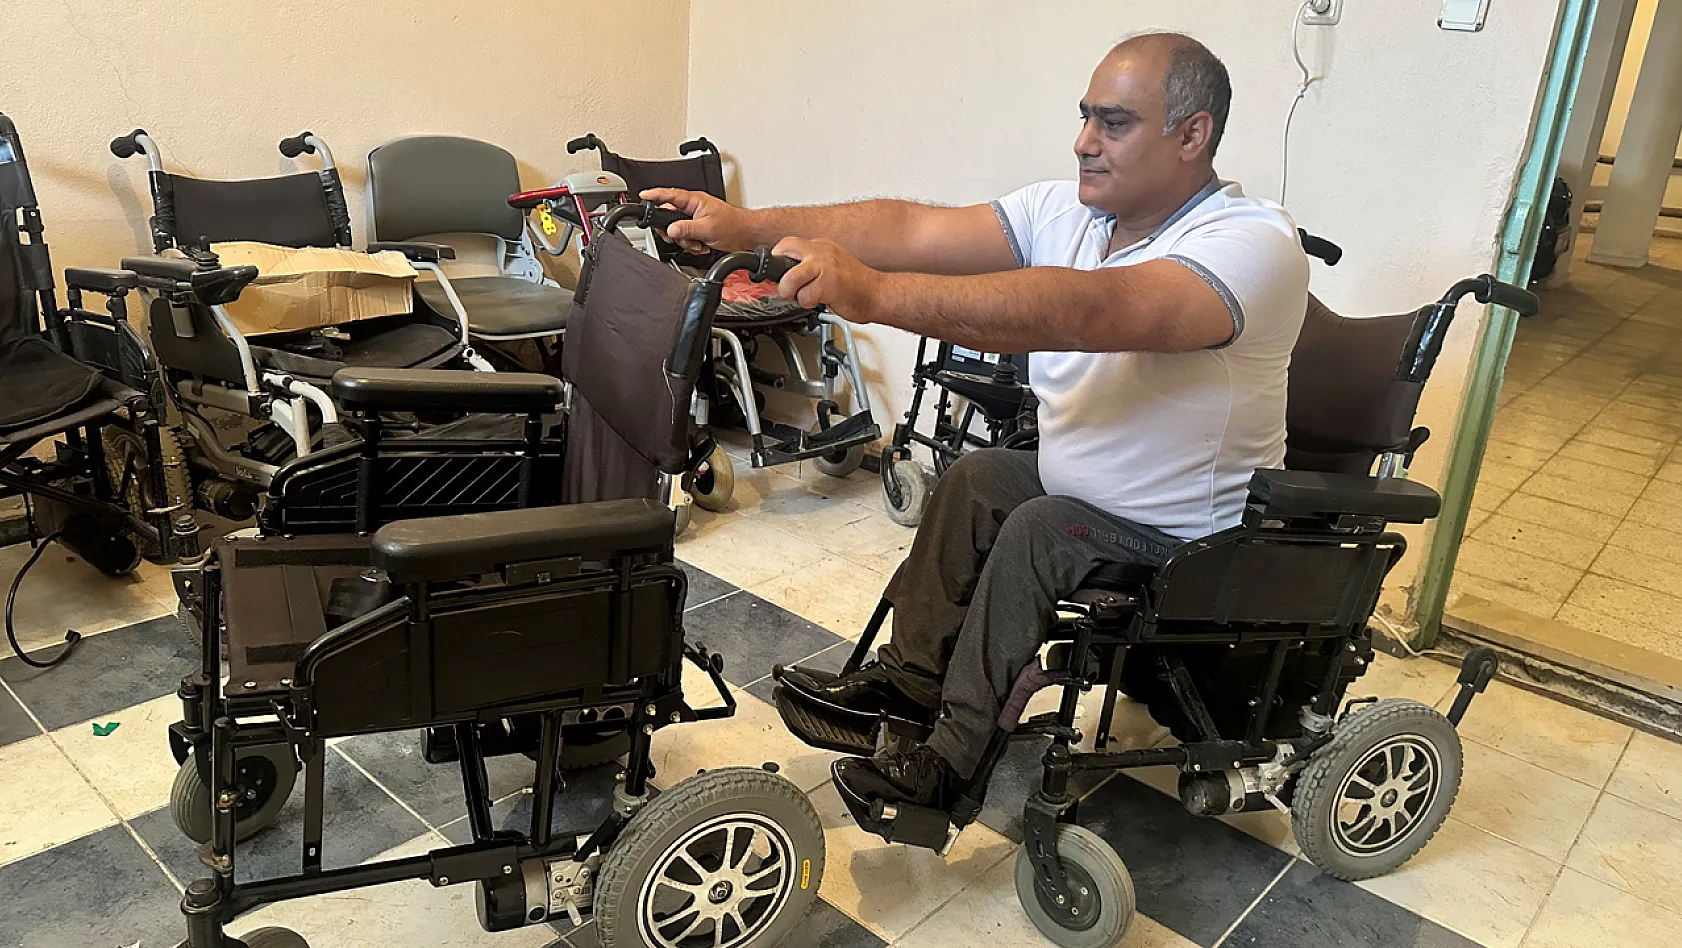 Engelli Usta, Evinin Bodrumuna Kurduğu Atölye İle Engellilerin Eli Ayağı Oldu